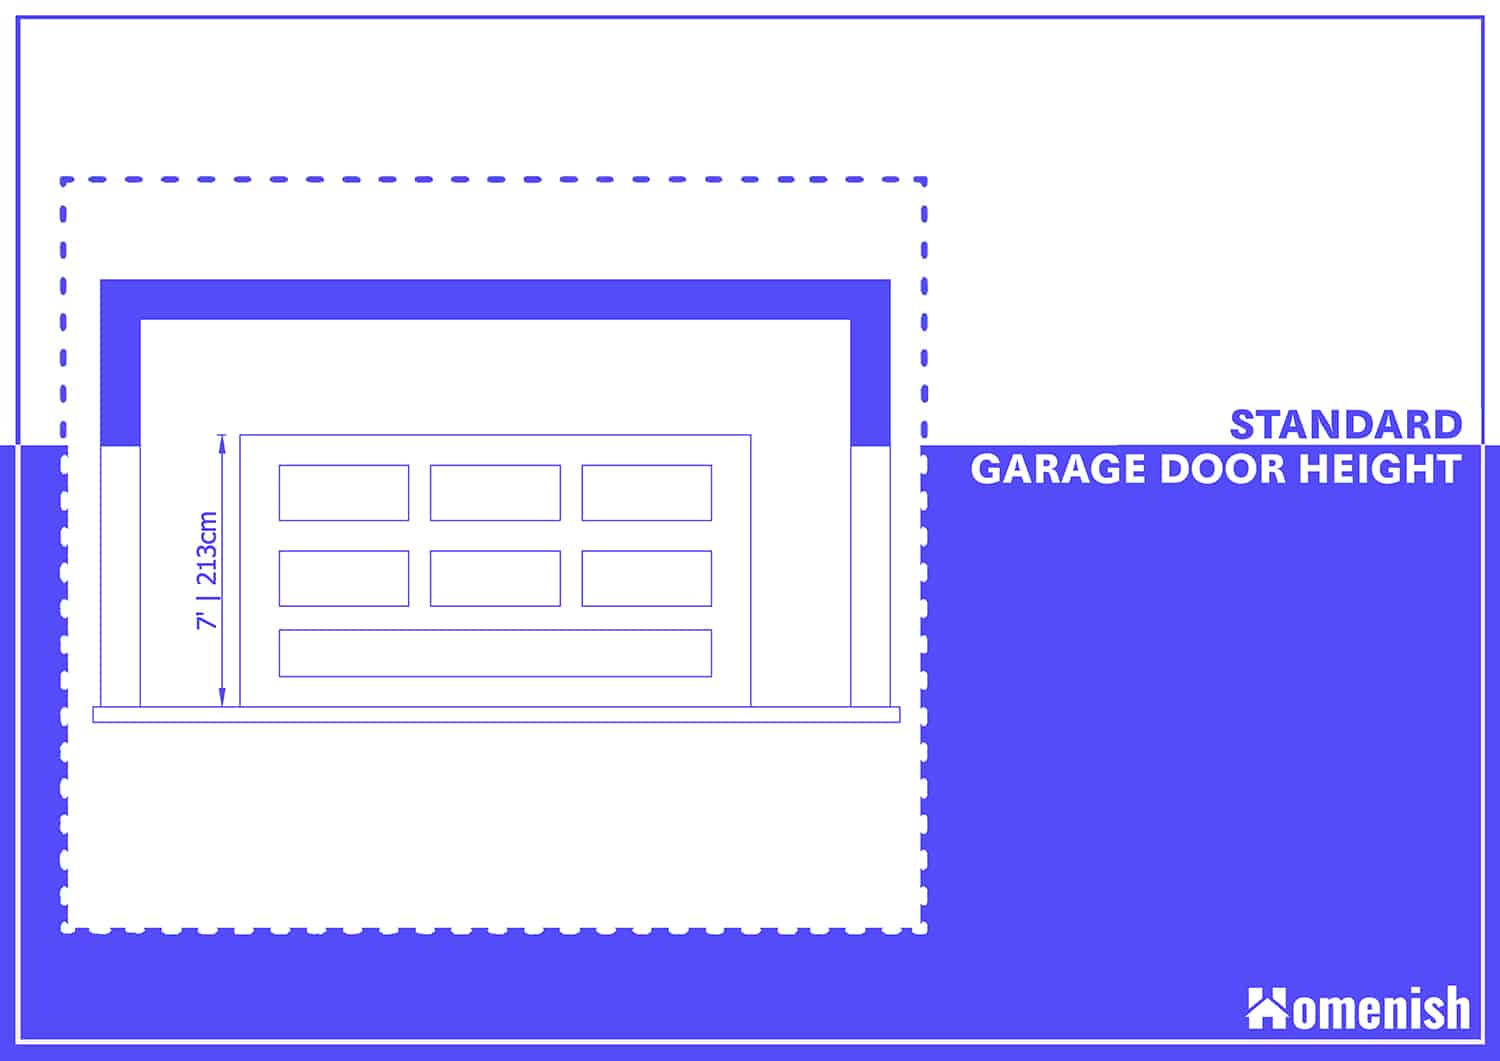 Standard Garage Door Height